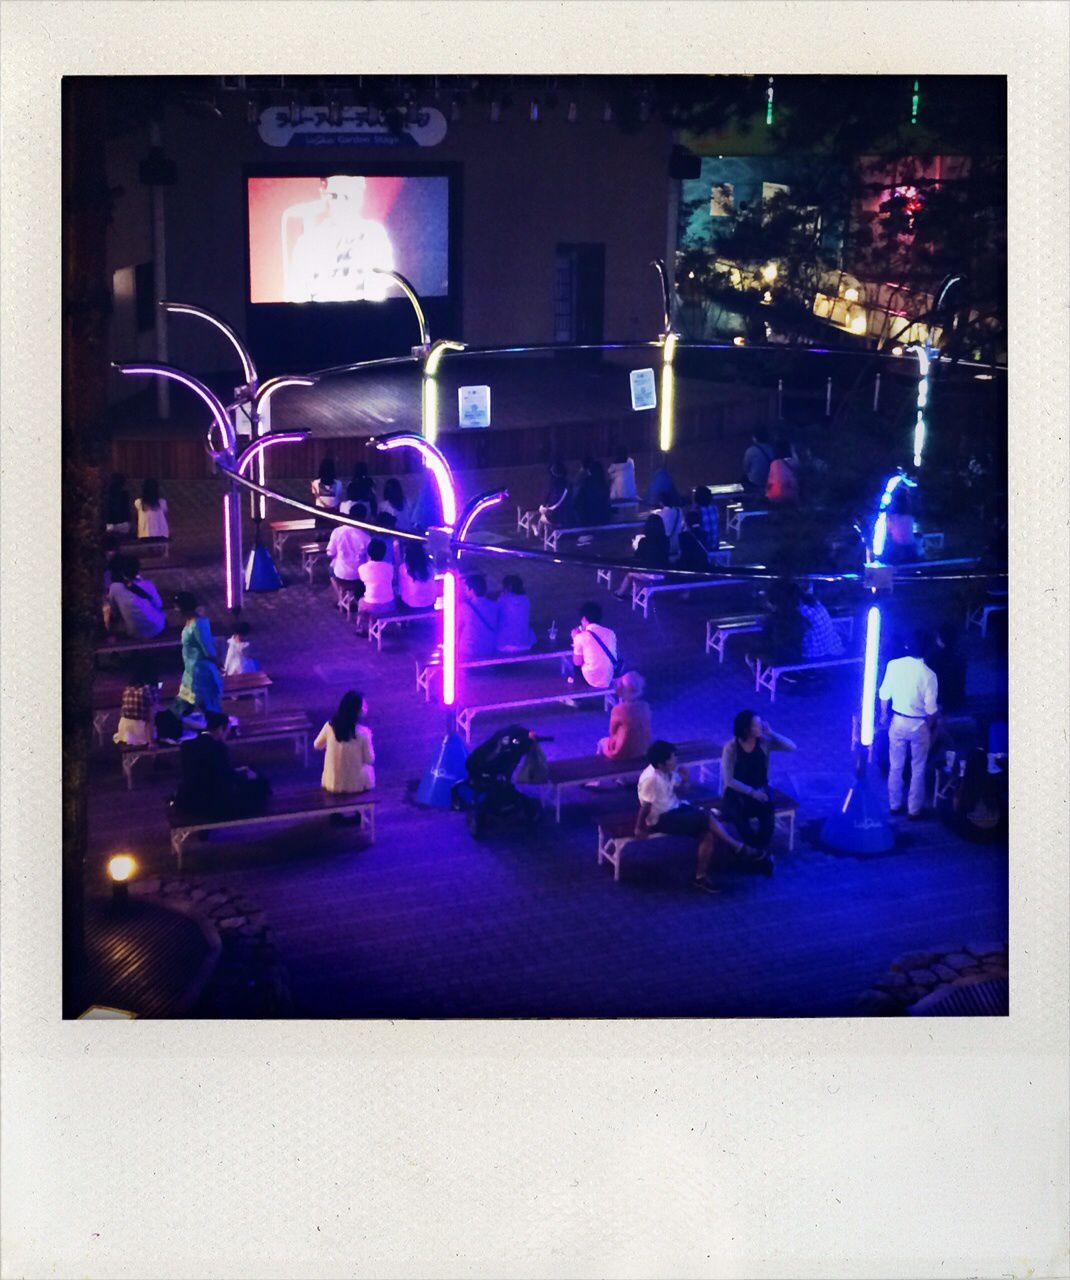 Et pour finir, un concert en plein air à Tokyo avec une scène vide et la projection du groupe sur l'écran !!!